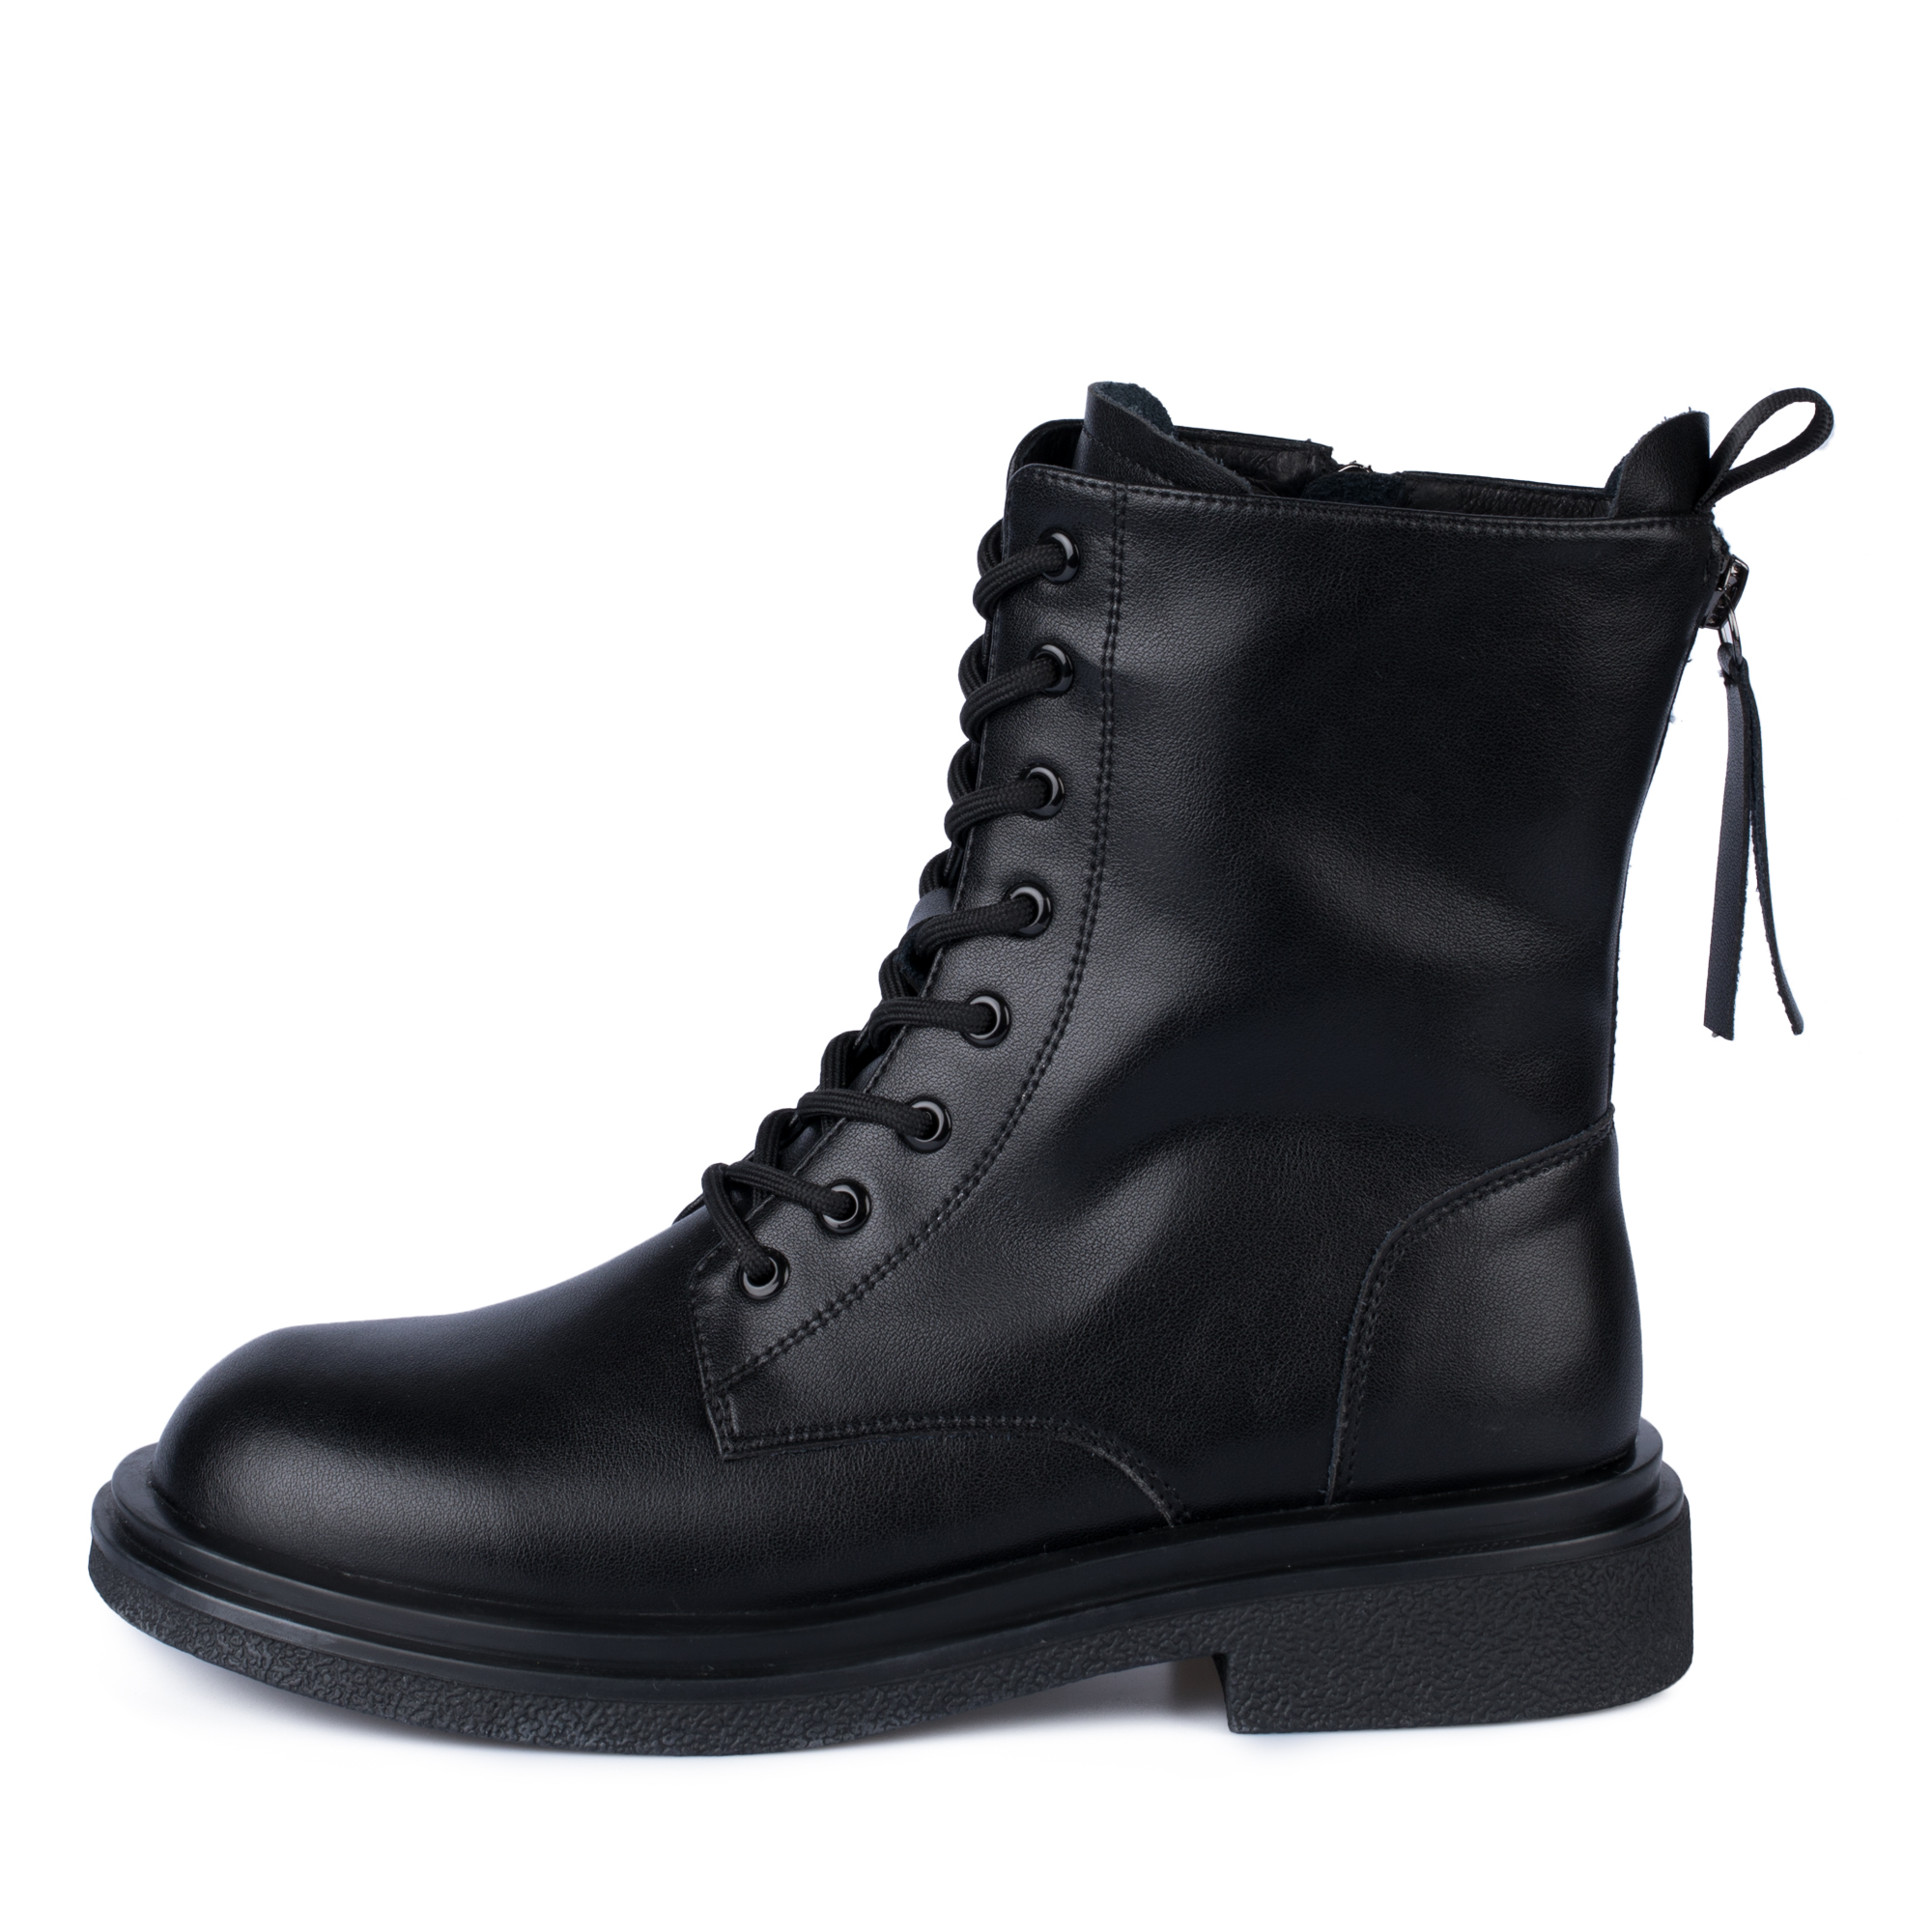 Ботинки Thomas Munz 098-704B-5602, цвет черный, размер 38 - фото 1